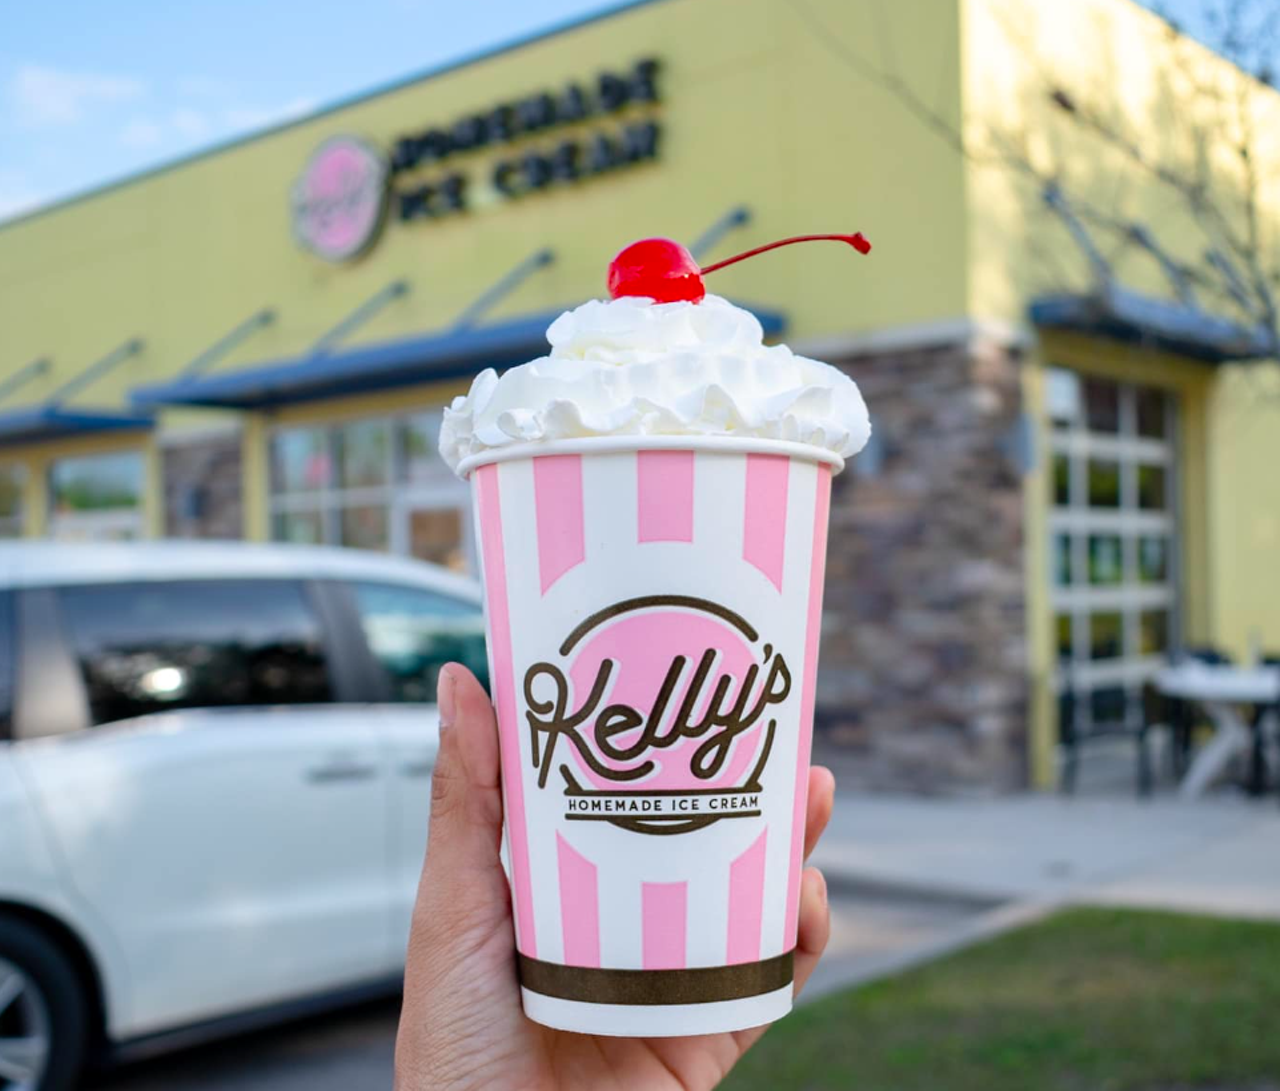 Best Desserts
Winner: Kelly’s Homemade Ice Cream
Runners-up: The Glass Knife, Gideon’s Bakehouse